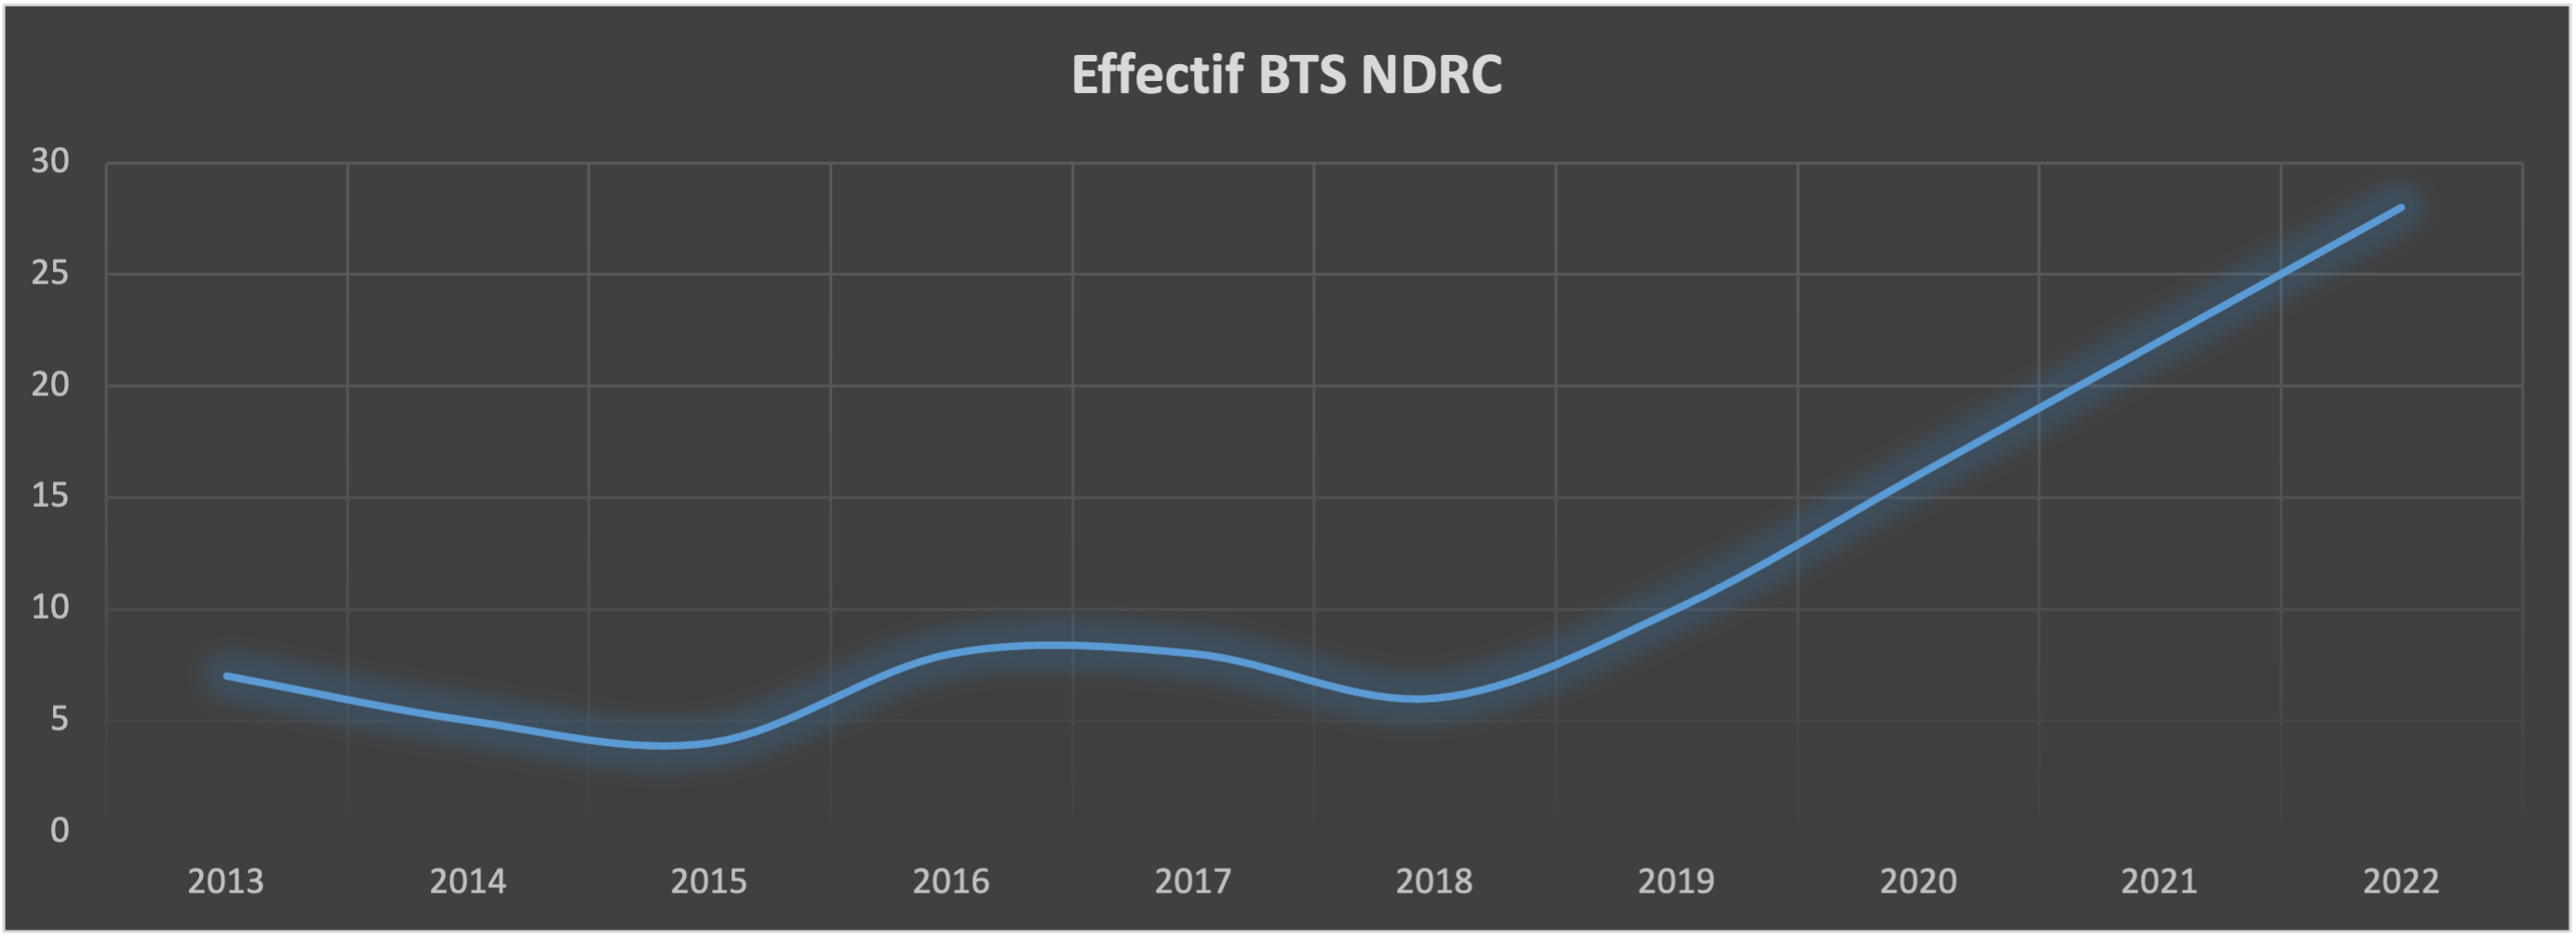 Effectif NDRC 2022